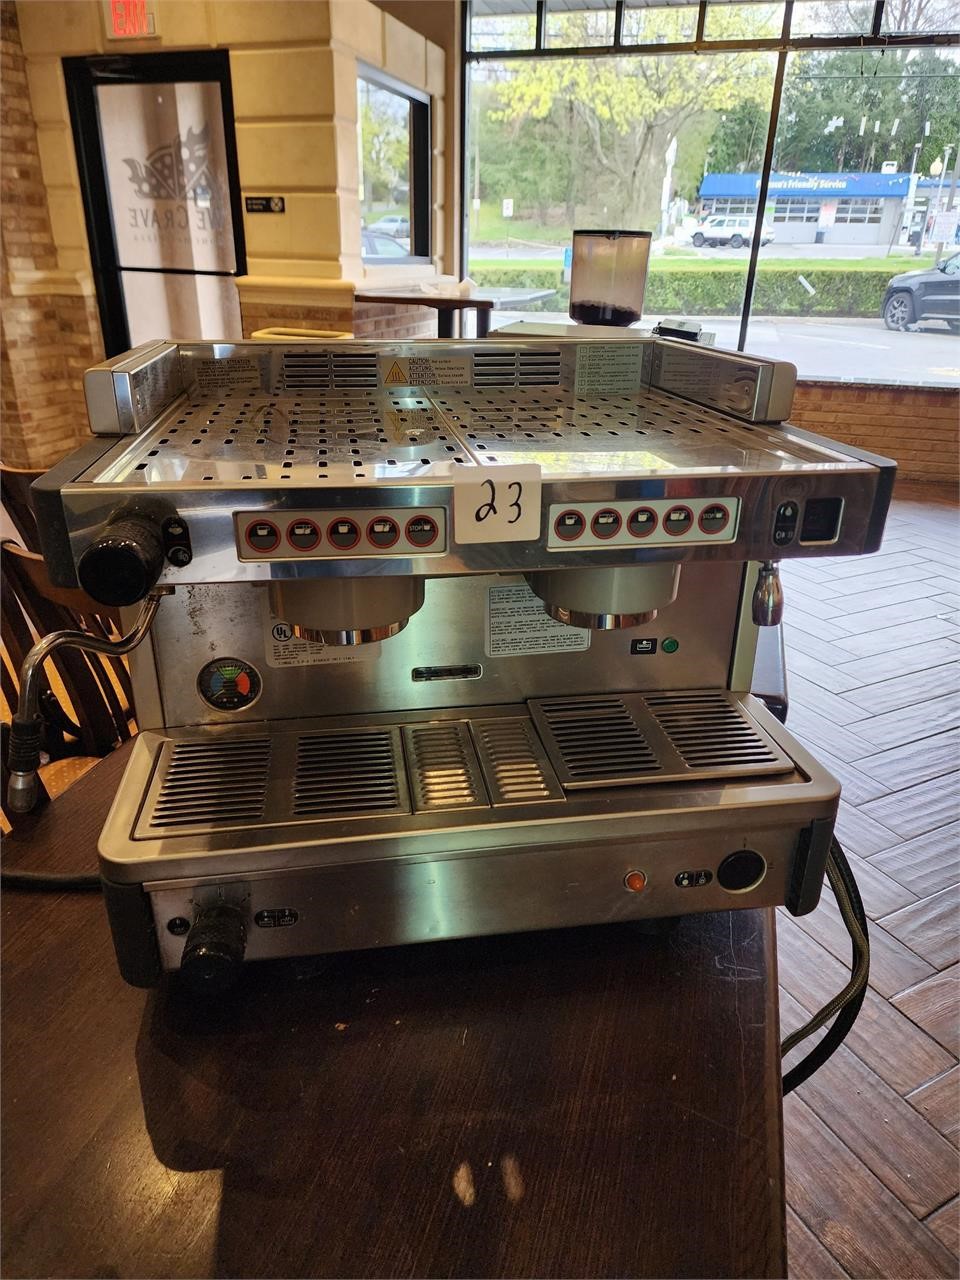 La Cimbali 2 Head Espresso & Cappuccino Machine